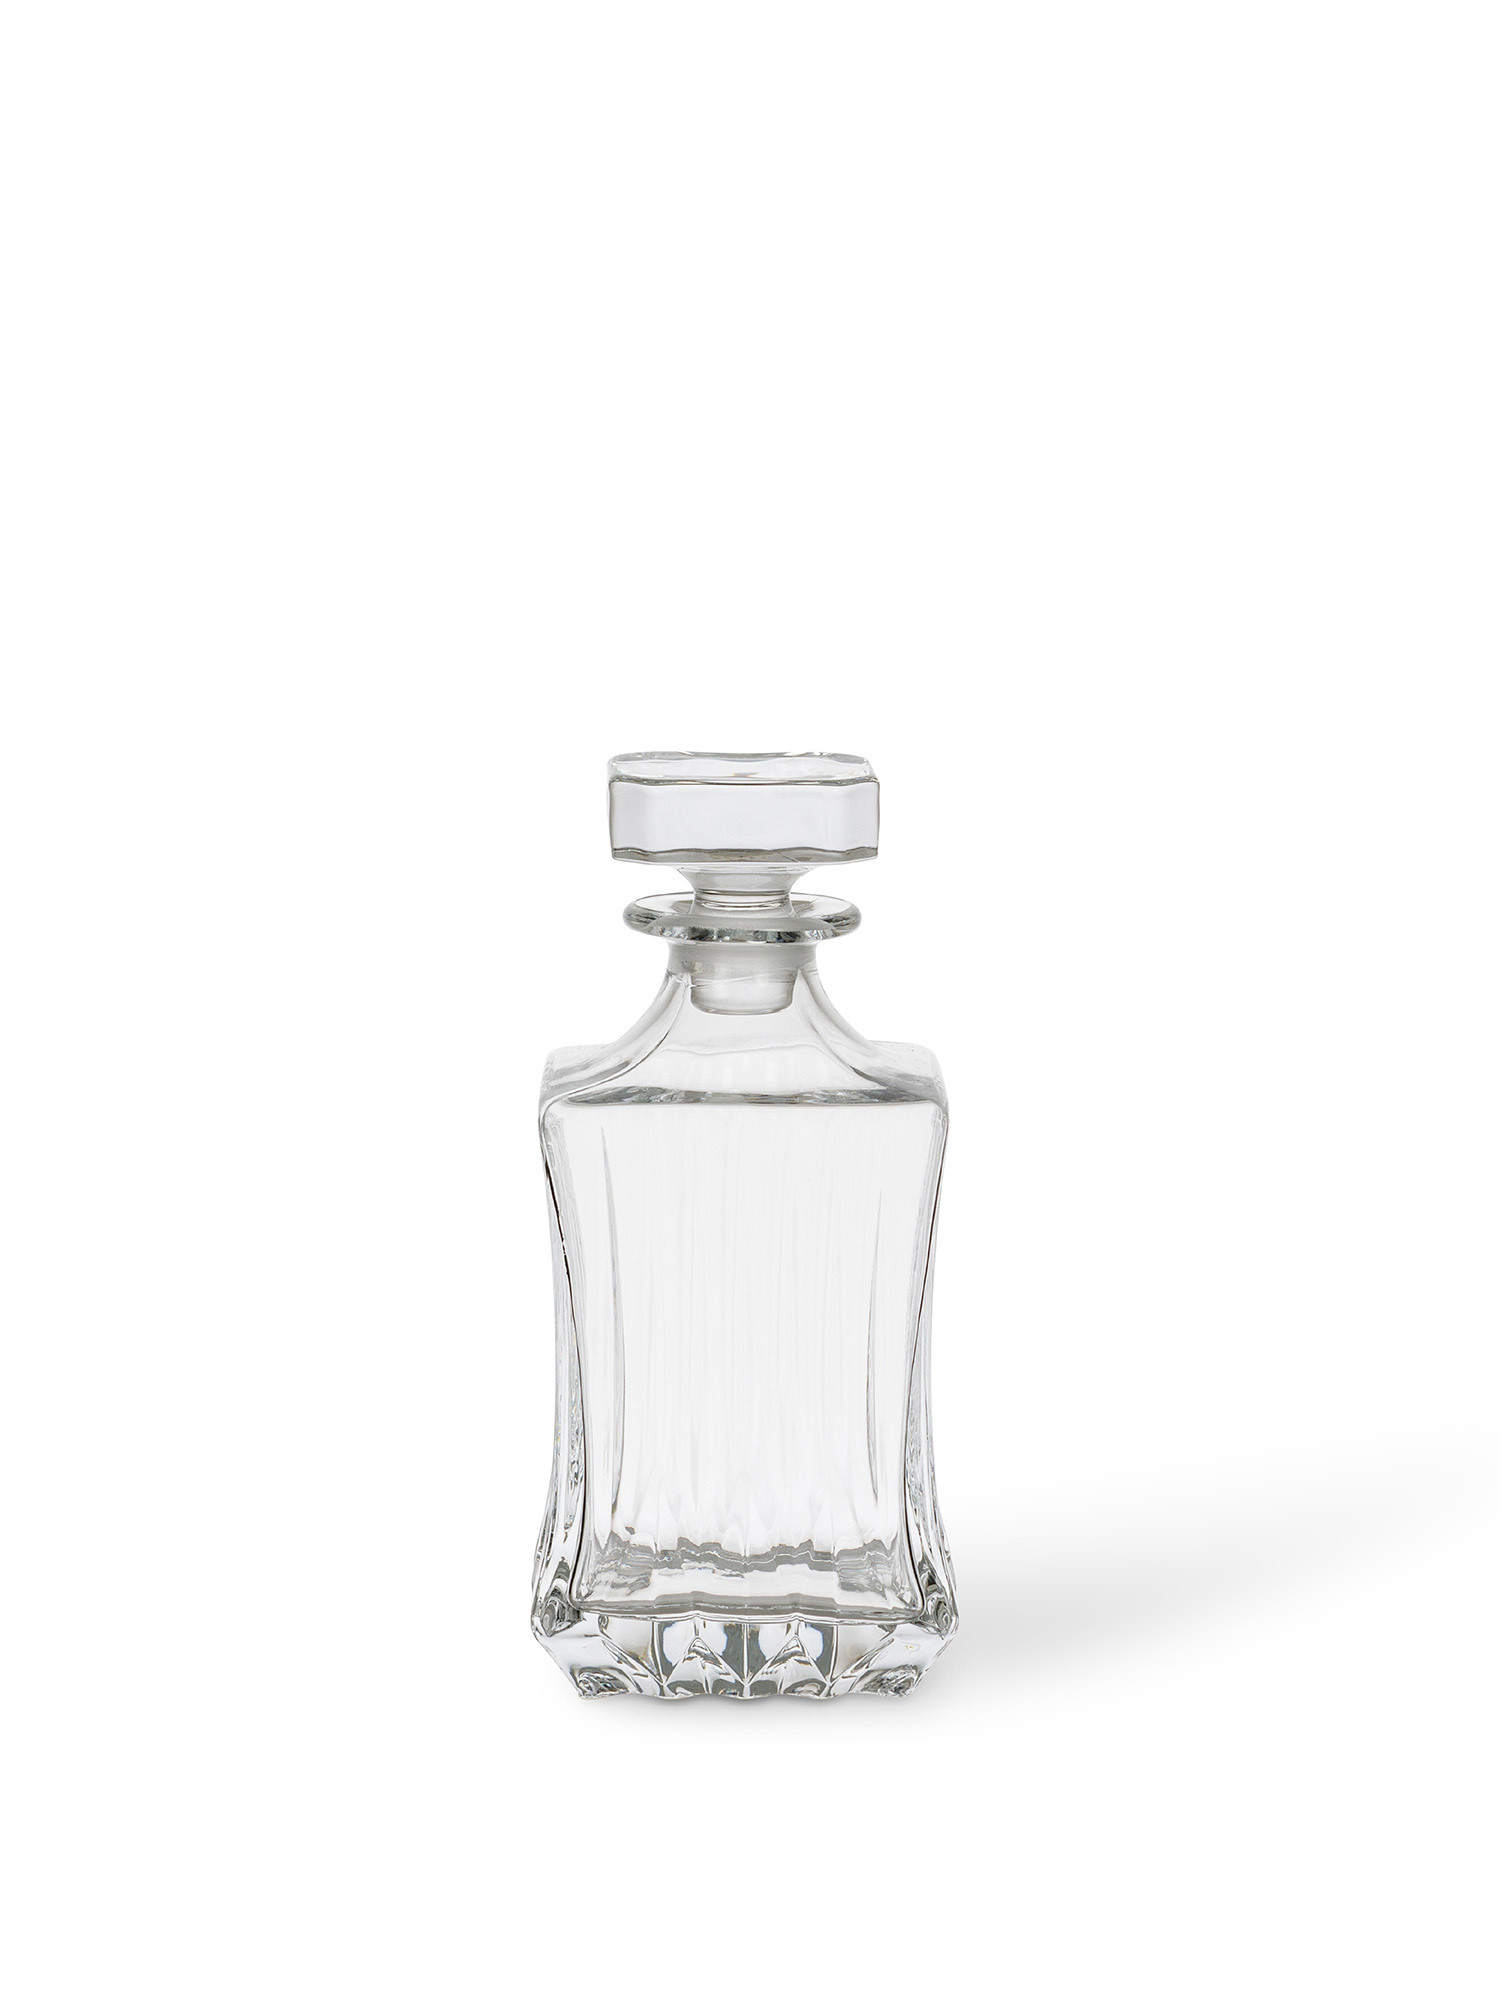 Crystal whiskey bottle, Transparent, large image number 0